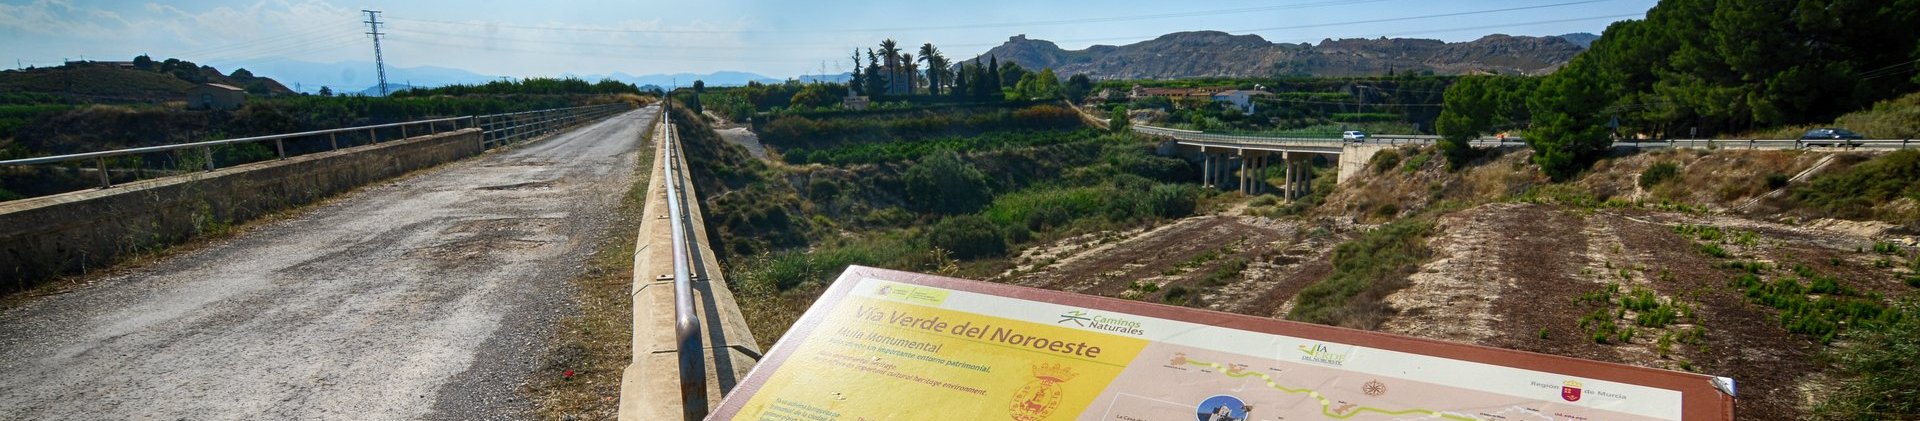 Senda del tiempo, Mula: opinión, experiencia - Qué ver en Mula: Naturaleza, patrimonio - Región de Murcia - Foro Murcia